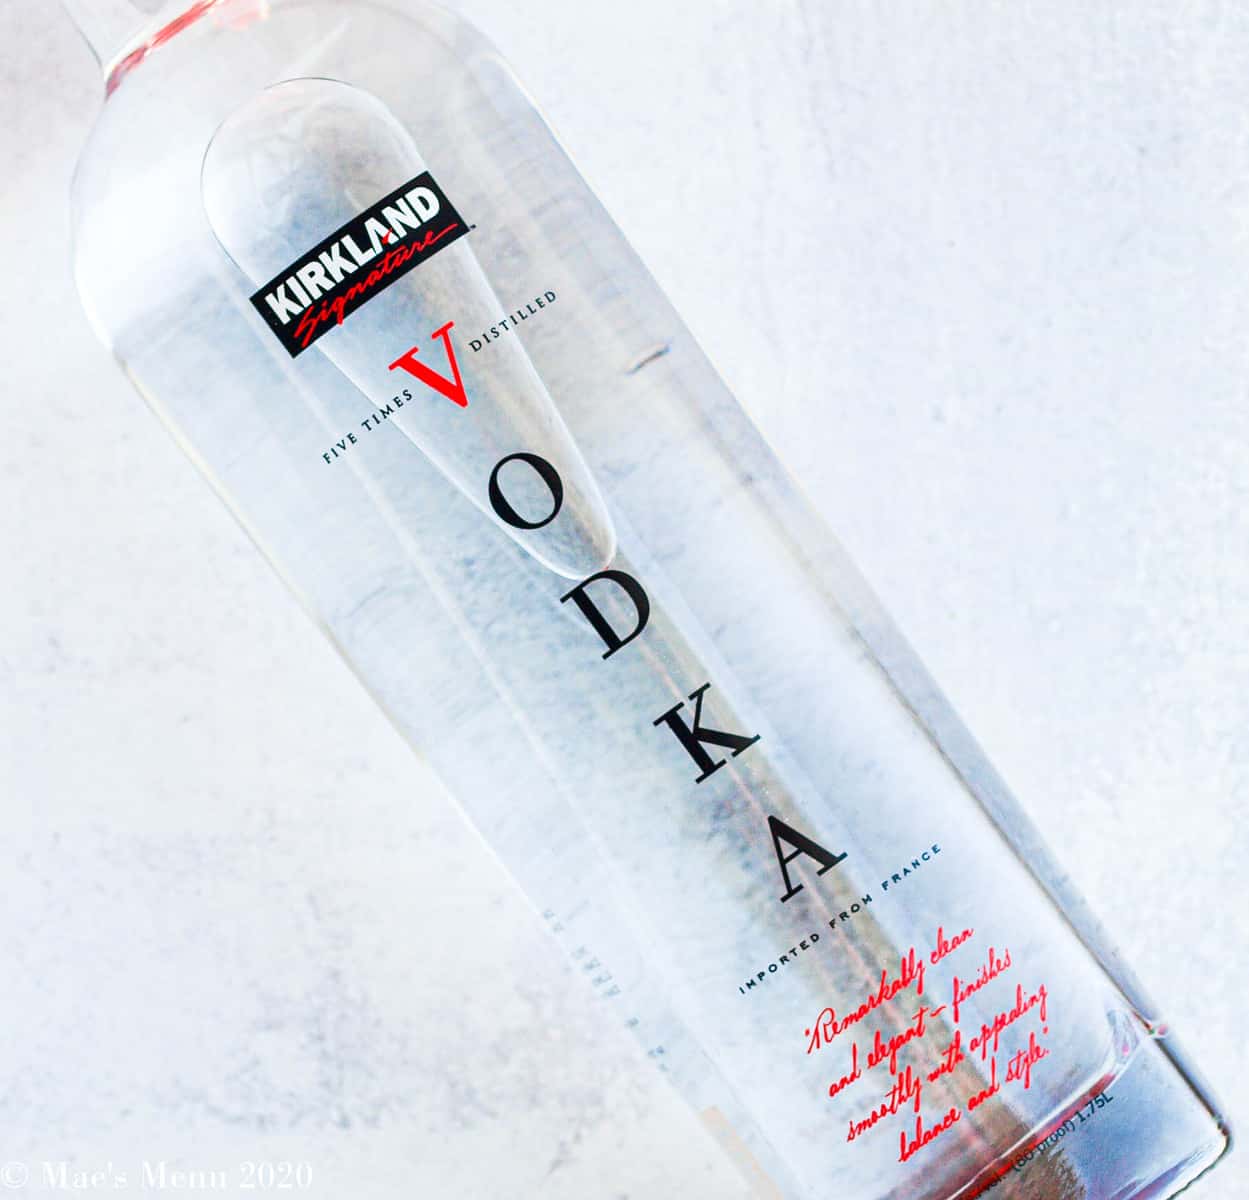 An overhead shot of a kirkland vodka bottle